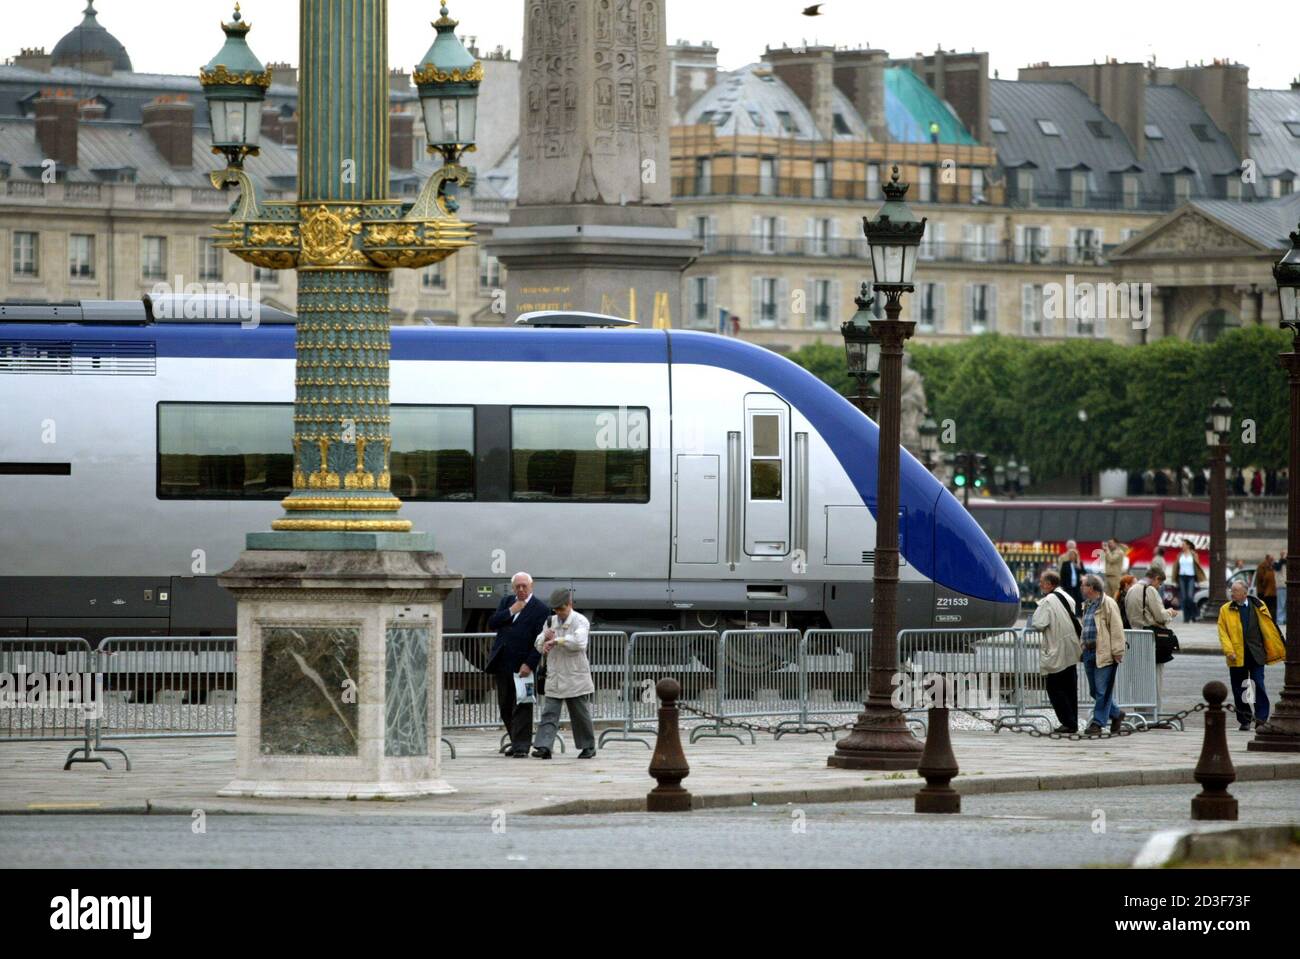 Ein Hochgeschwindigkeits-Trian wird auf dem Place de la Concorde in Paris am 9. Mai 2003 ausgestellt. Vom 17. Mai bis 15. Juni organisiert die französische Eisenbahngesellschaft SNCF die Ausstellung "Train Capitale" über den französischen Eisenbahnverkehr. 150 Jahre Bahngeschichte werden von den Lokomotiven der Crampton und Marc Seguin auf den künftigen Triebwagen AGC (AutoRail Grande Capacite) zurückgeführt. REUTERS/Charles Platiau CP/ Stockfoto